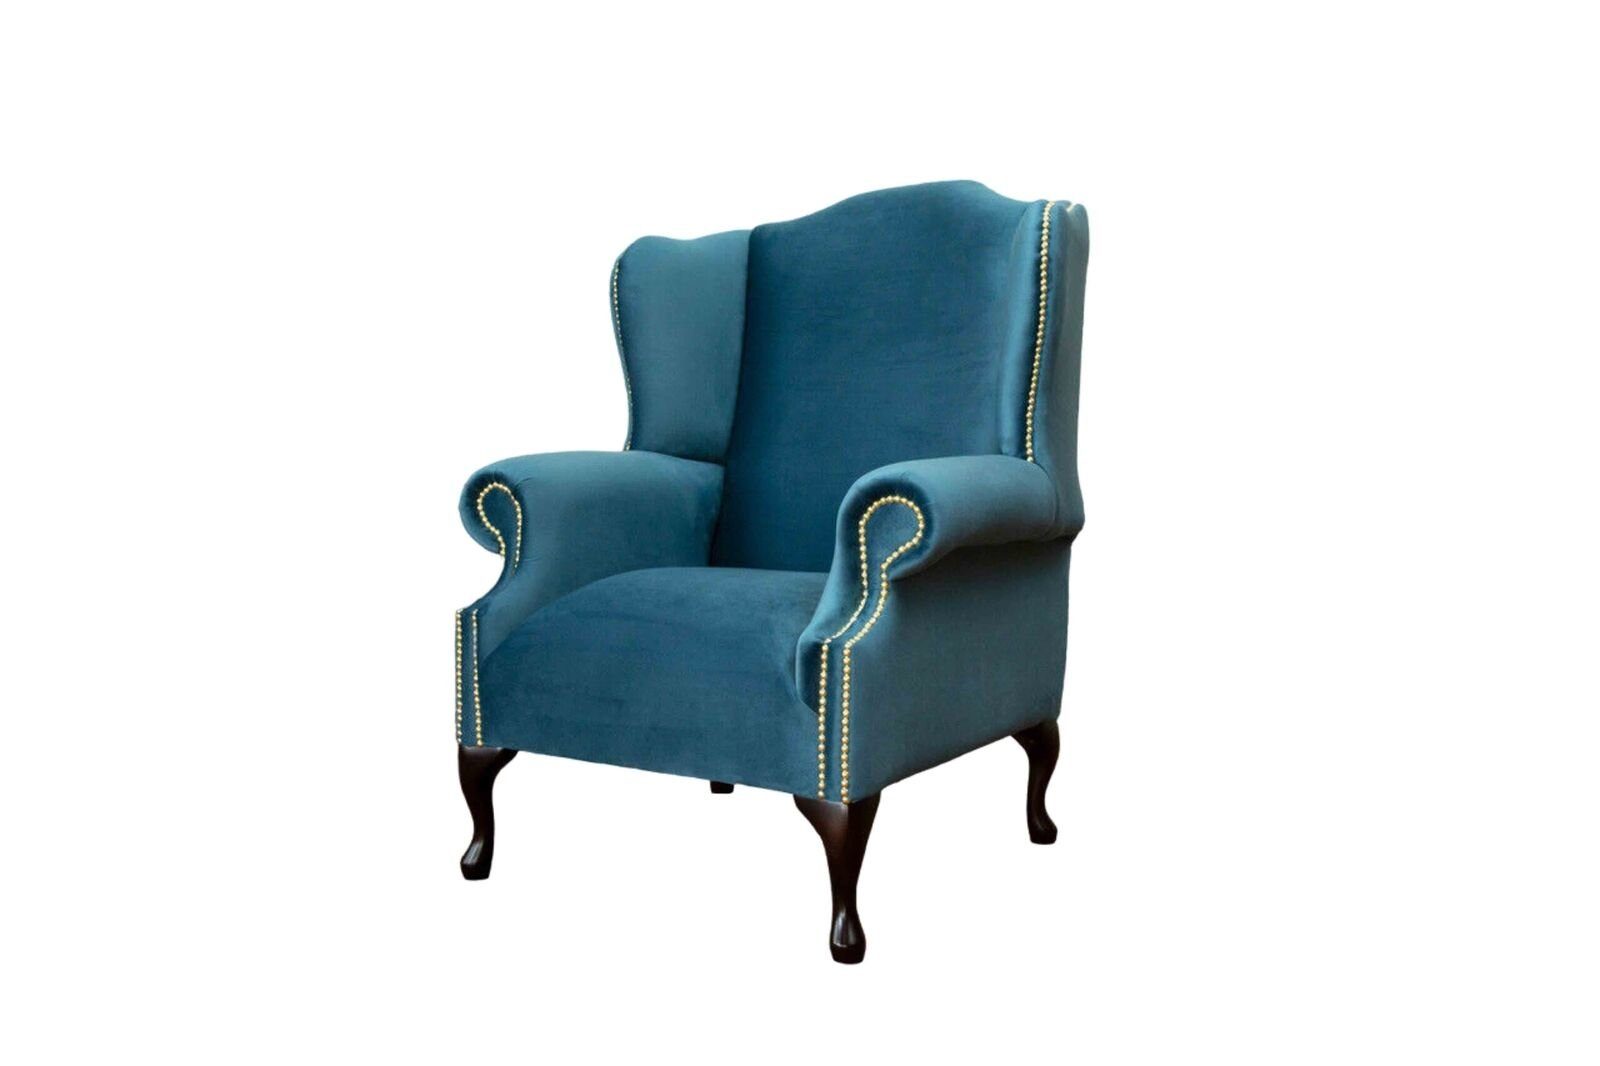 JVmoebel Ohrensessel Ohrensessel Einsitzer Chesterfield Couch Blau Sofa Polster Möbel Neu, Made In Europe